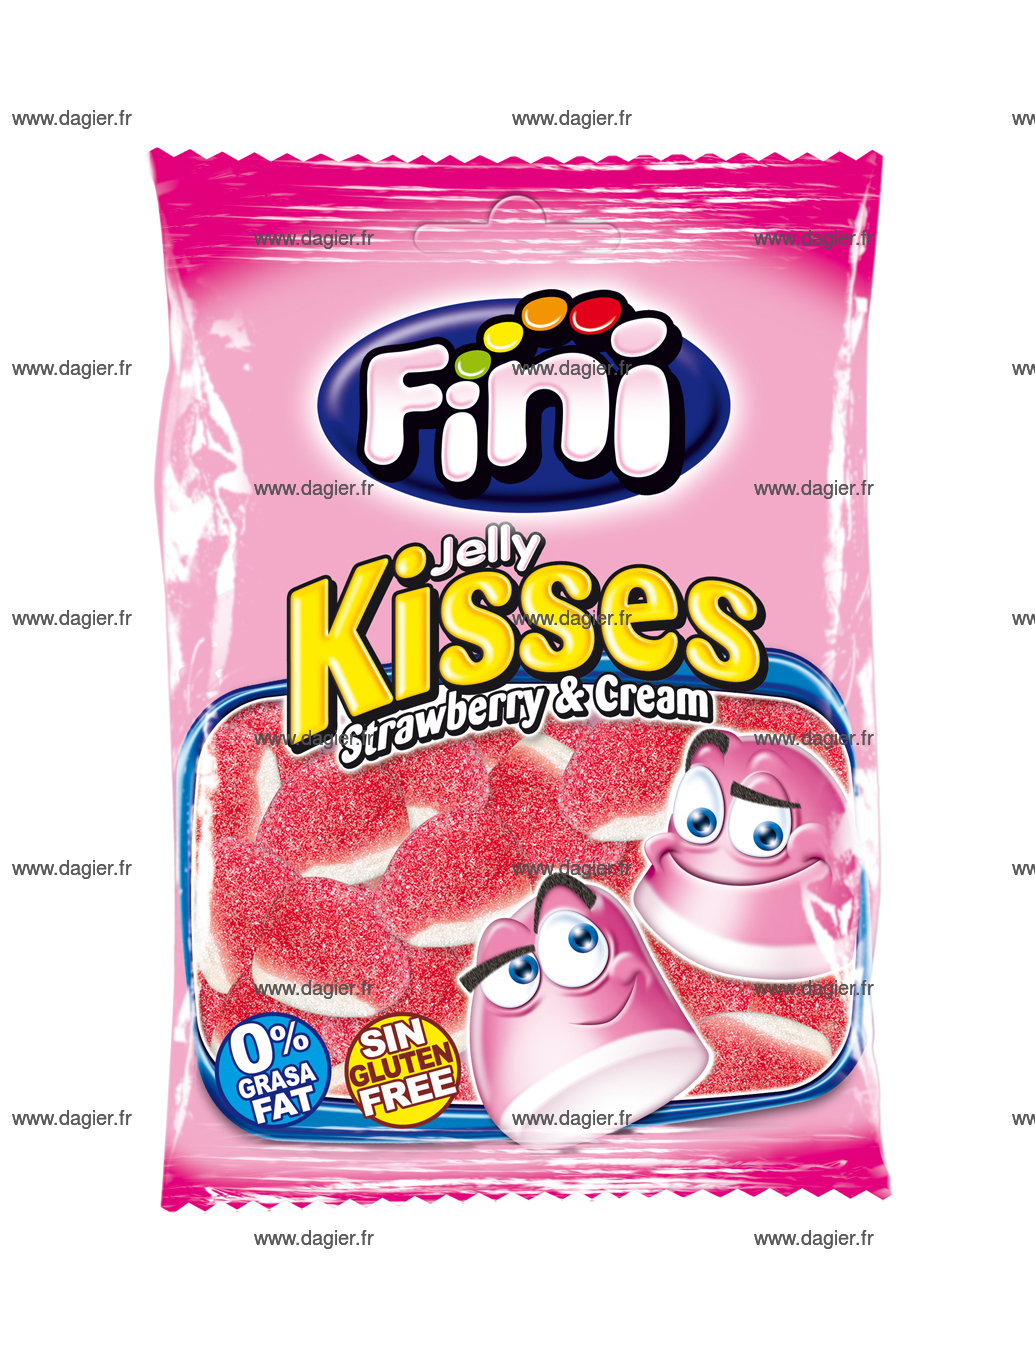 FINI - Bisous fraise sucre 90 gr x12